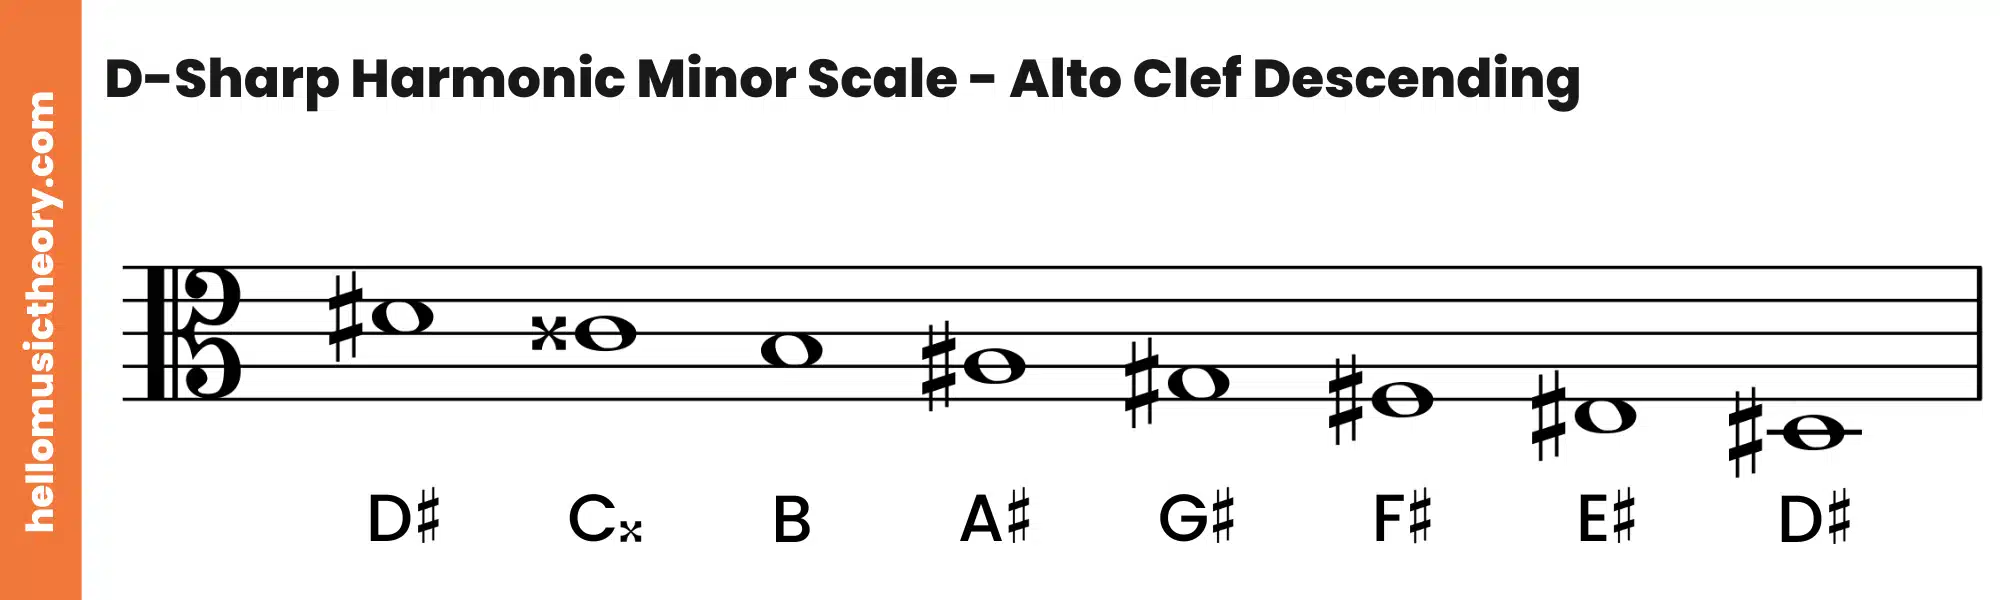 D-Sharp Harmonic Minor Scale Alto Clef Descending